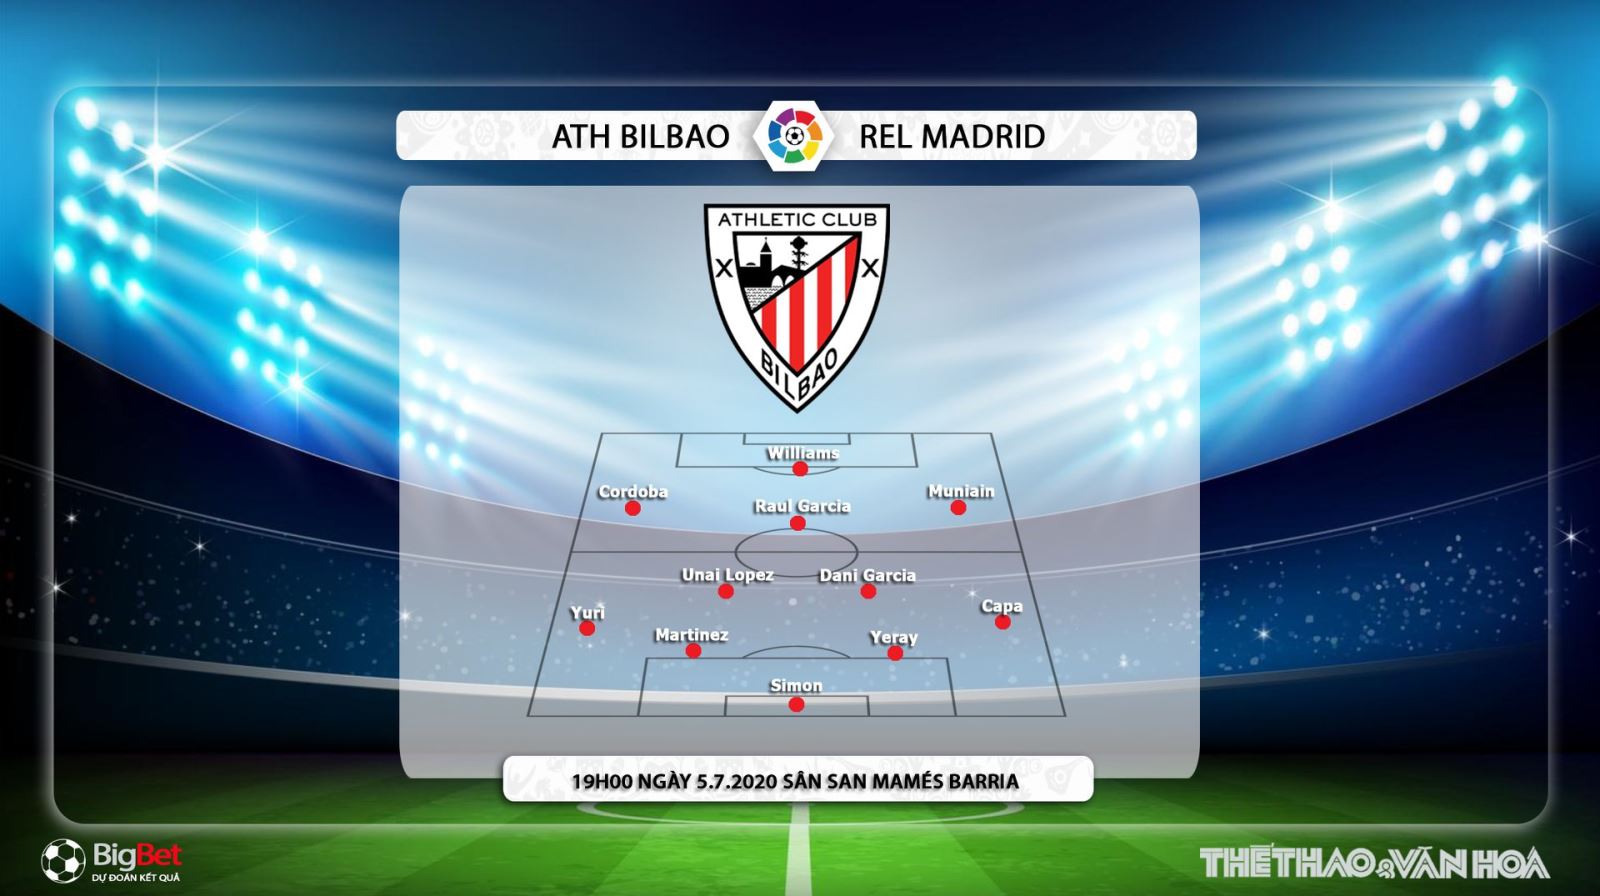 Athletic Bilbao vs Real Madrid, bóng đá, bong da, nhận định bóng đá, kèo bóng đá, nhận định, dự đoán